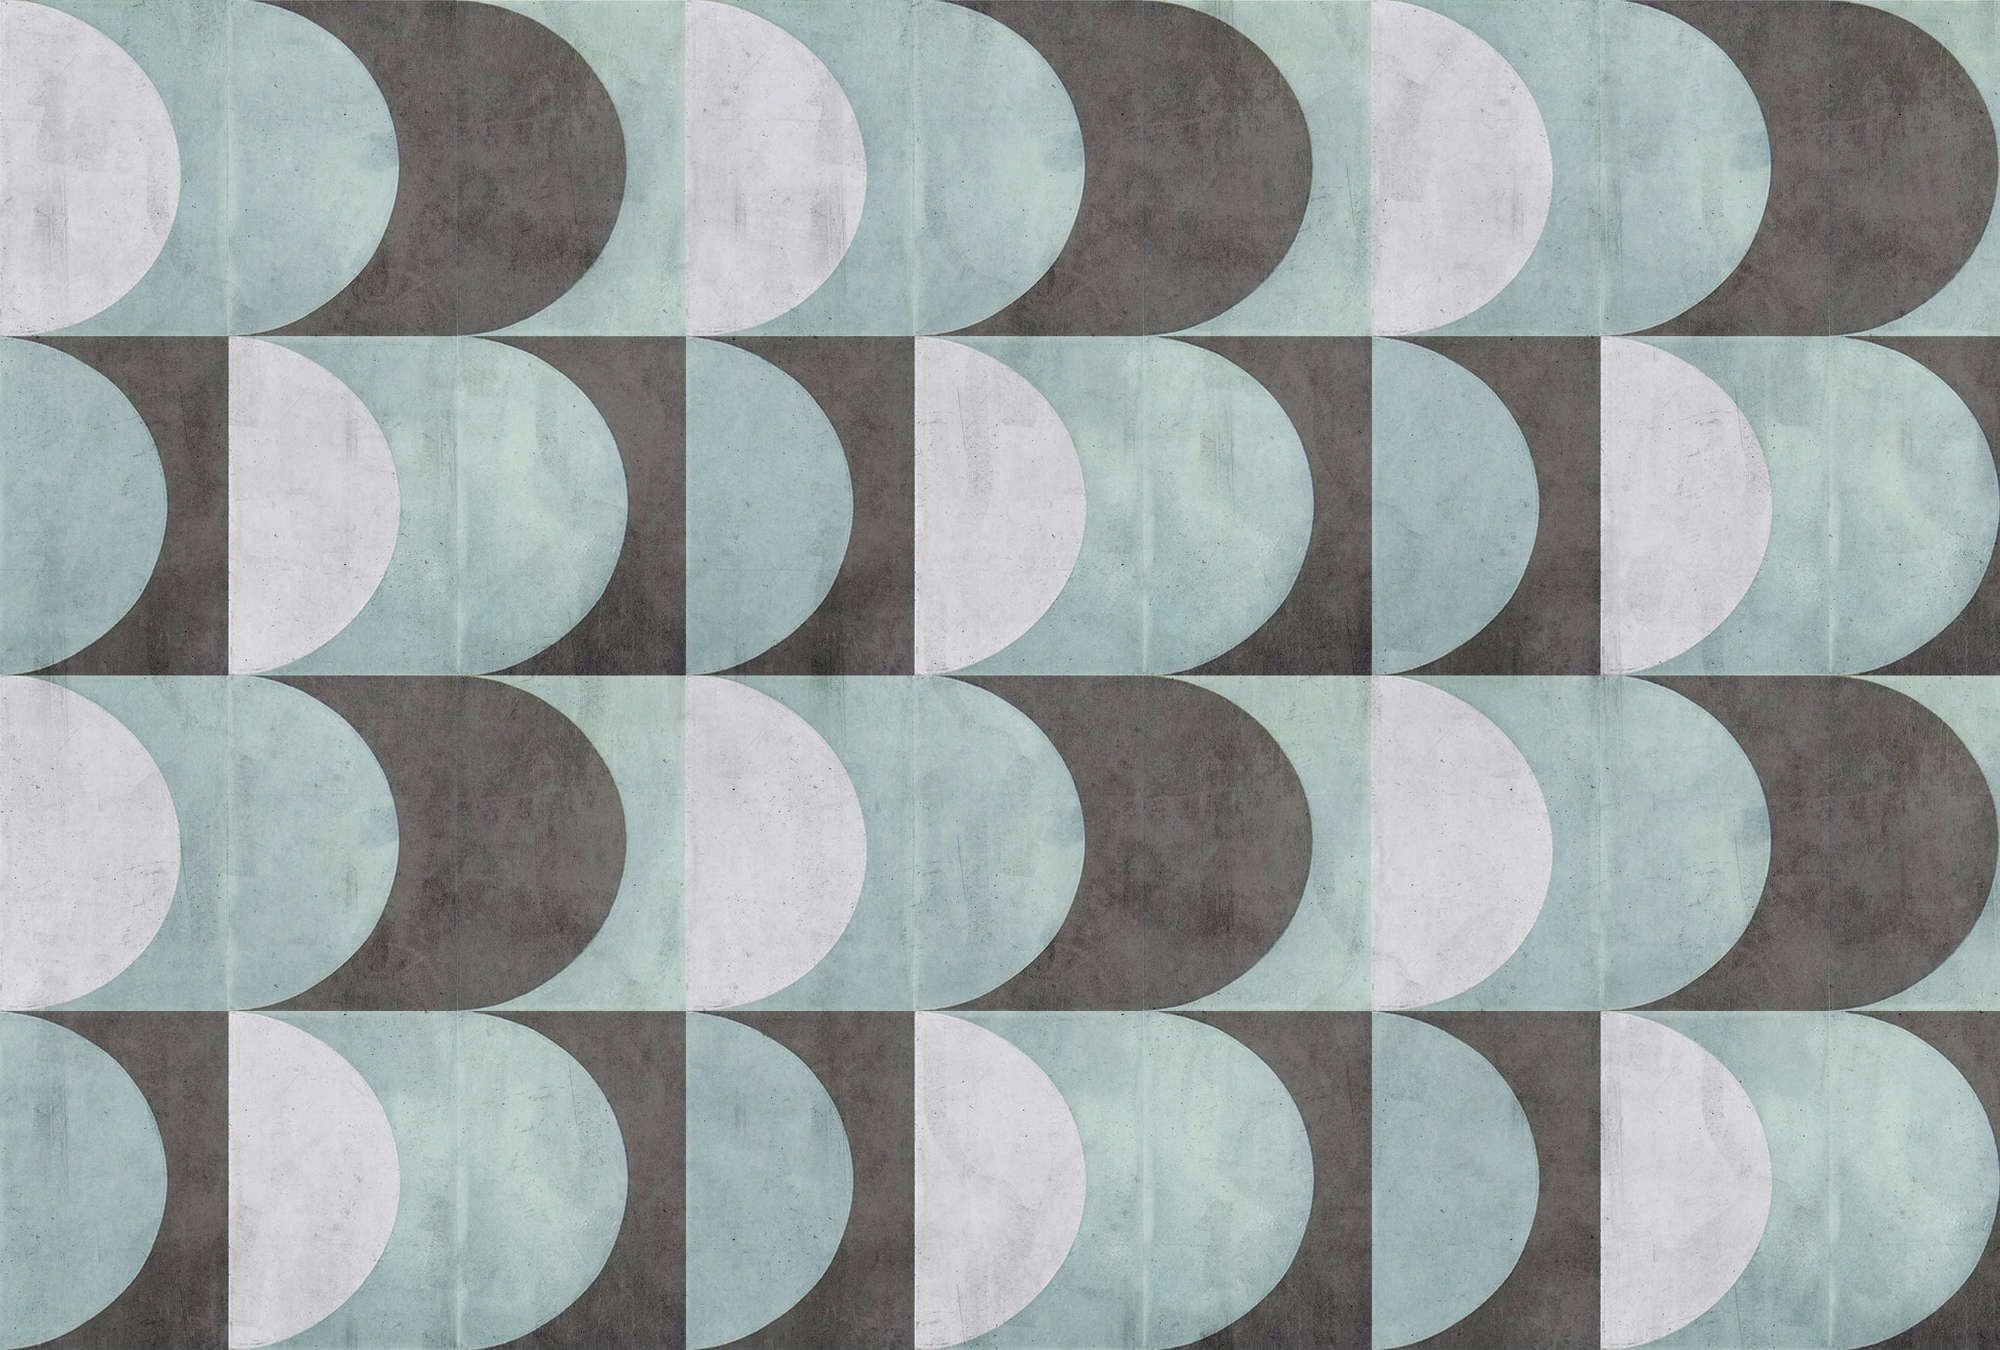             papier peint en papier panoramique »julek 2« - motif rétro imitation béton - vert menthe, gris | Intissé mat et lisse
        